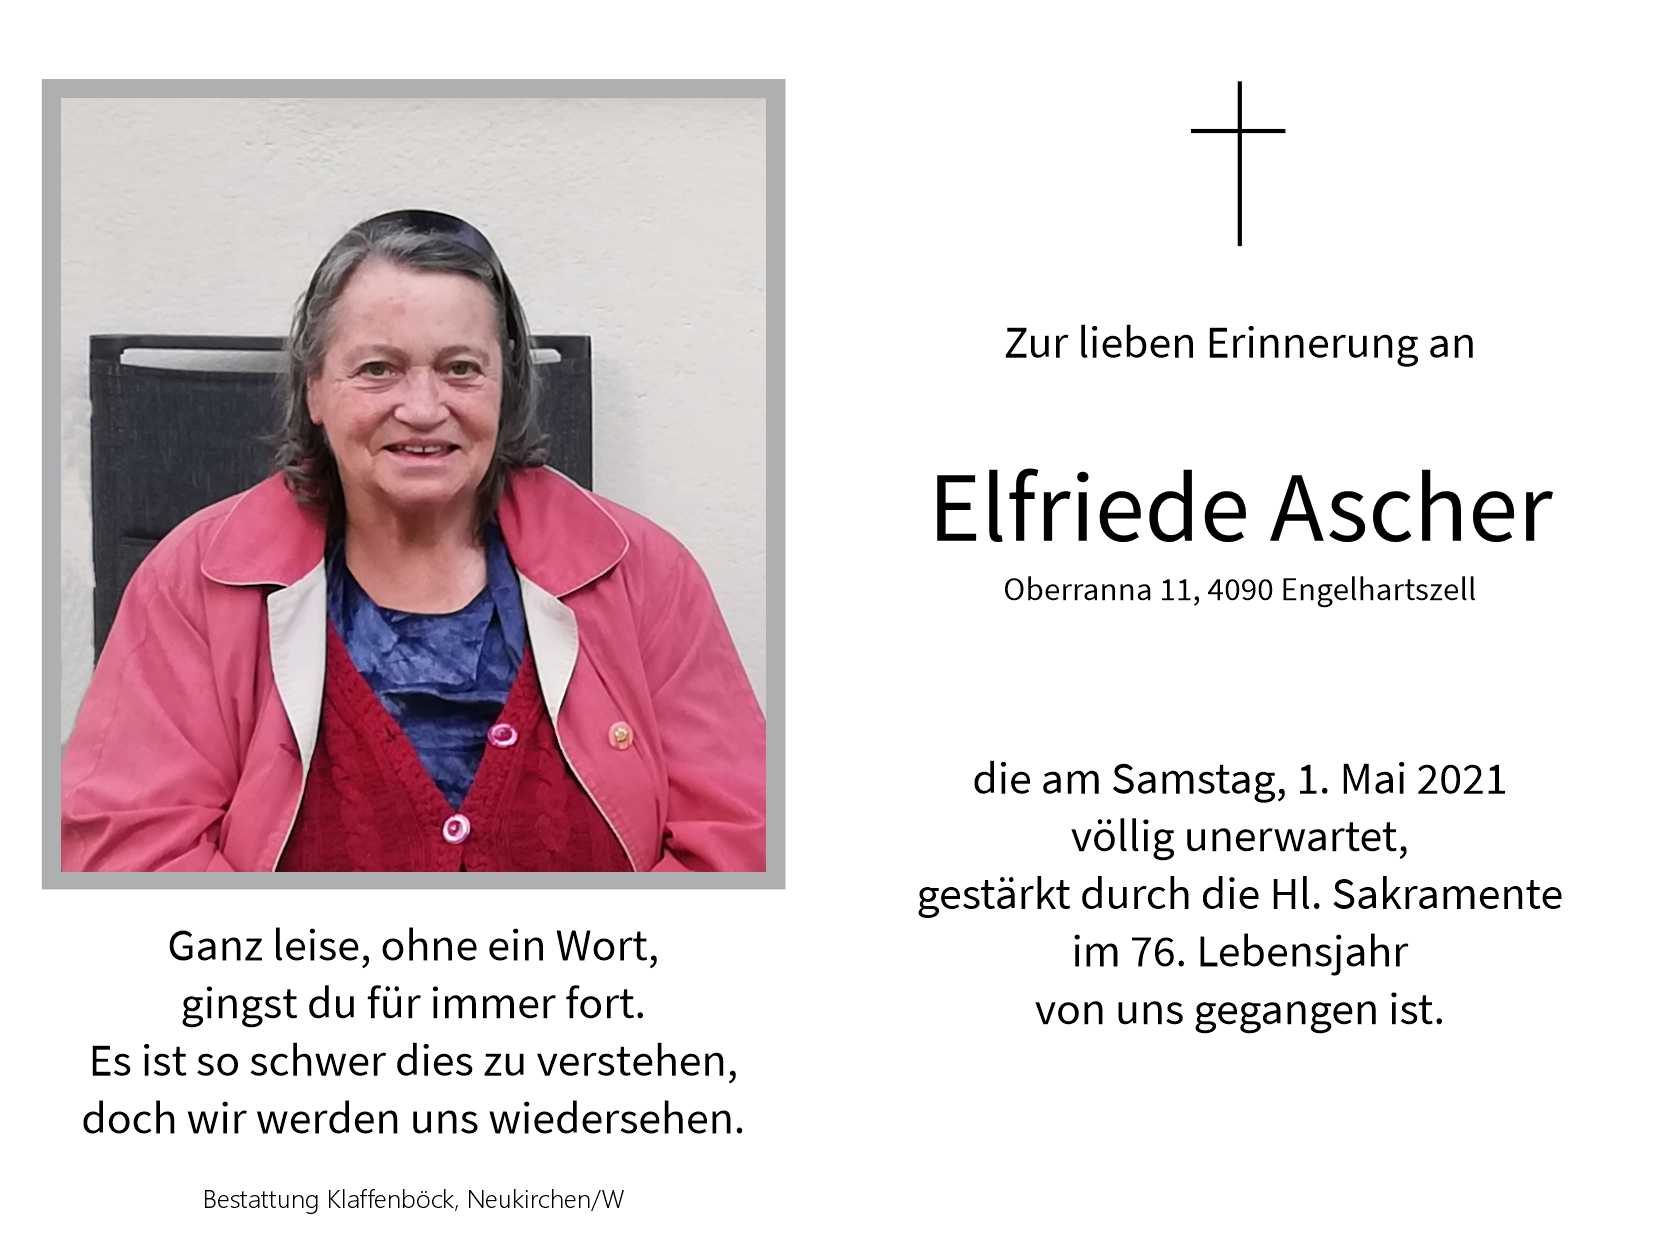 Elfriede  Ascher